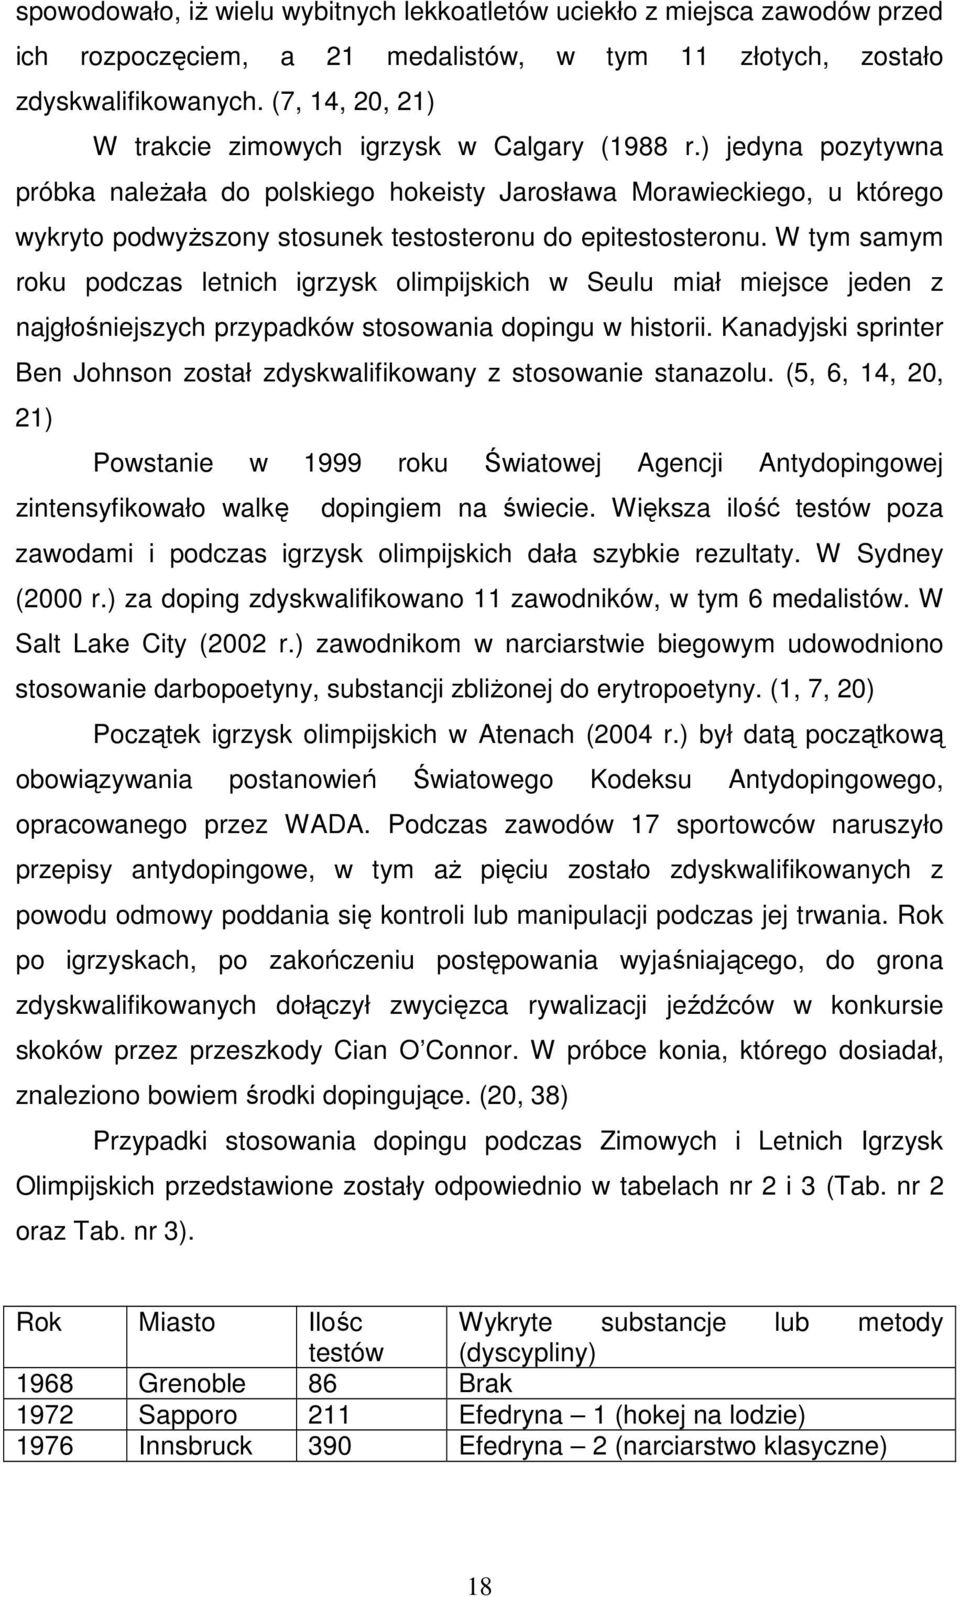 ) jedyna pozytywna próbka naleŝała do polskiego hokeisty Jarosława Morawieckiego, u którego wykryto podwyŝszony stosunek testosteronu do epitestosteronu.